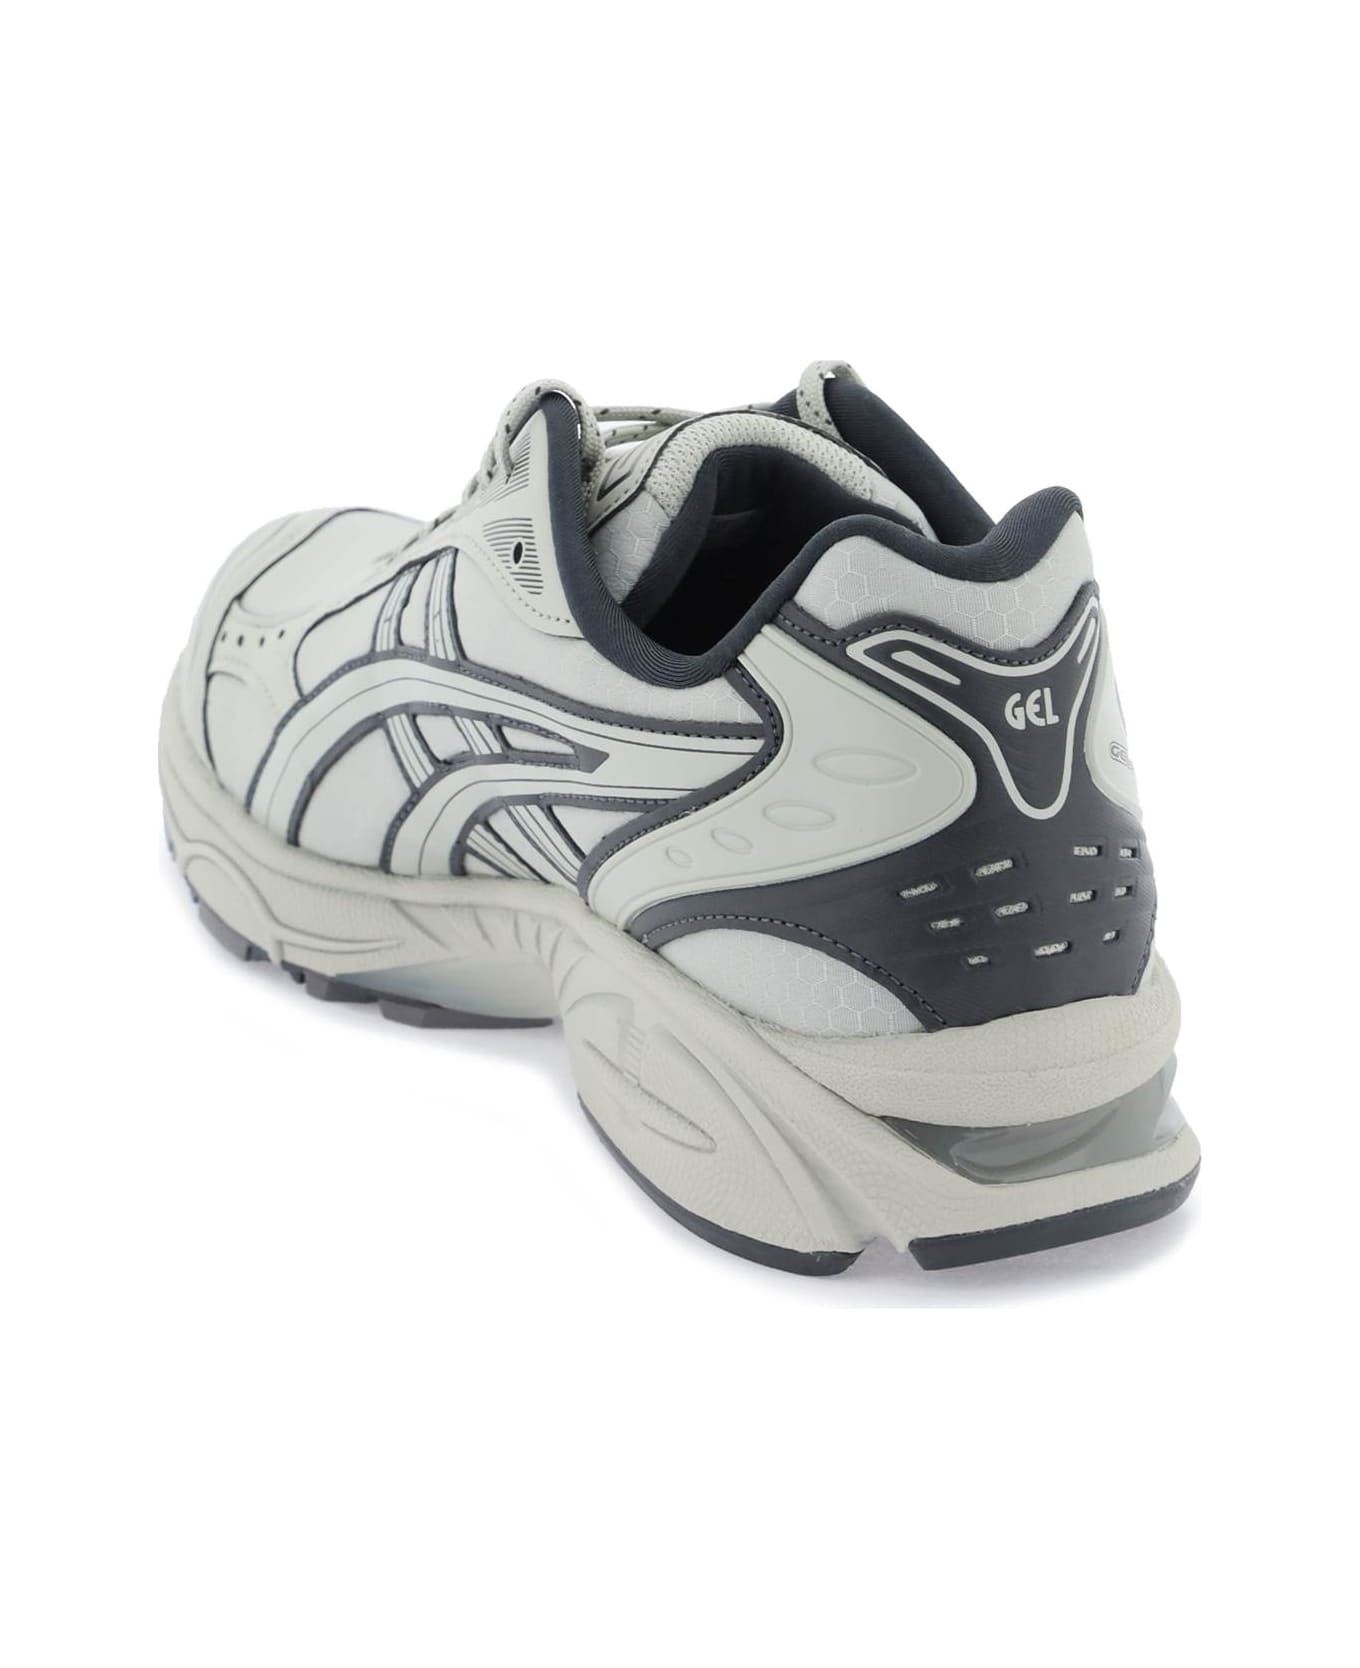 Asics Gel-kayano 14 Sneakers - WHITE SAGE GRAPHITE GREY (Grey)